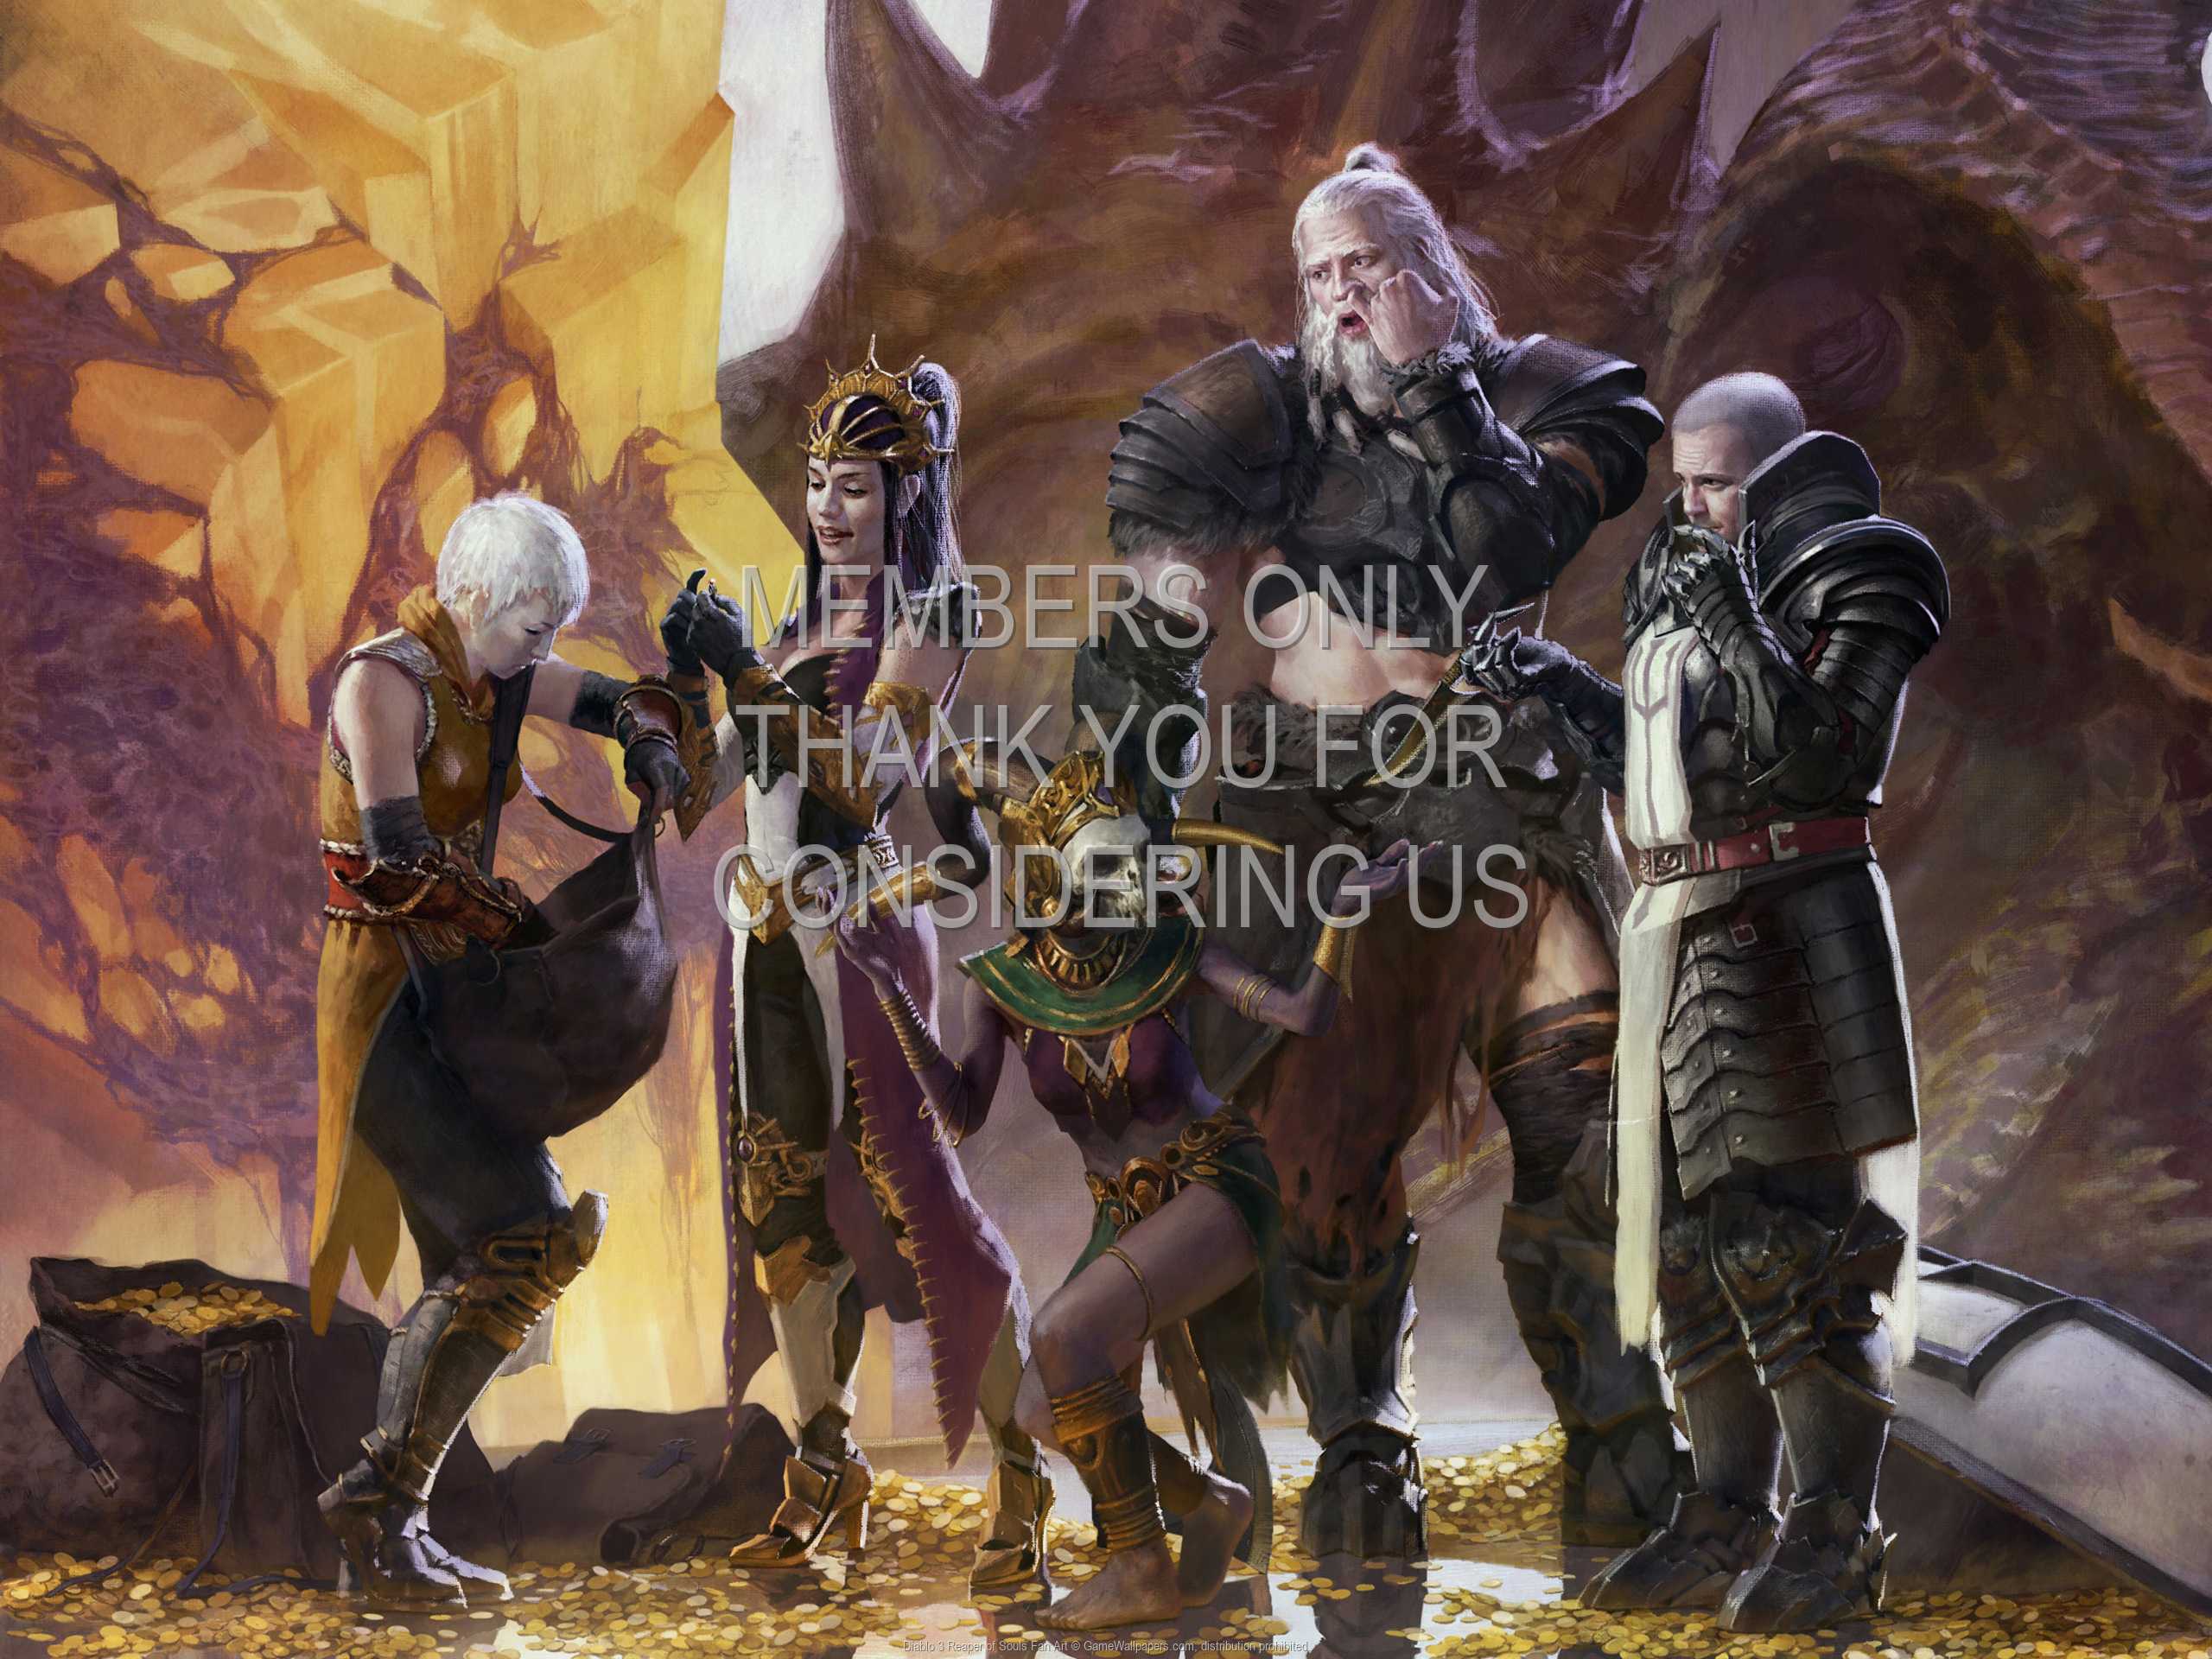 Diablo 3: Reaper of Souls Fan Art 1080p Horizontal Mobile wallpaper or background 05